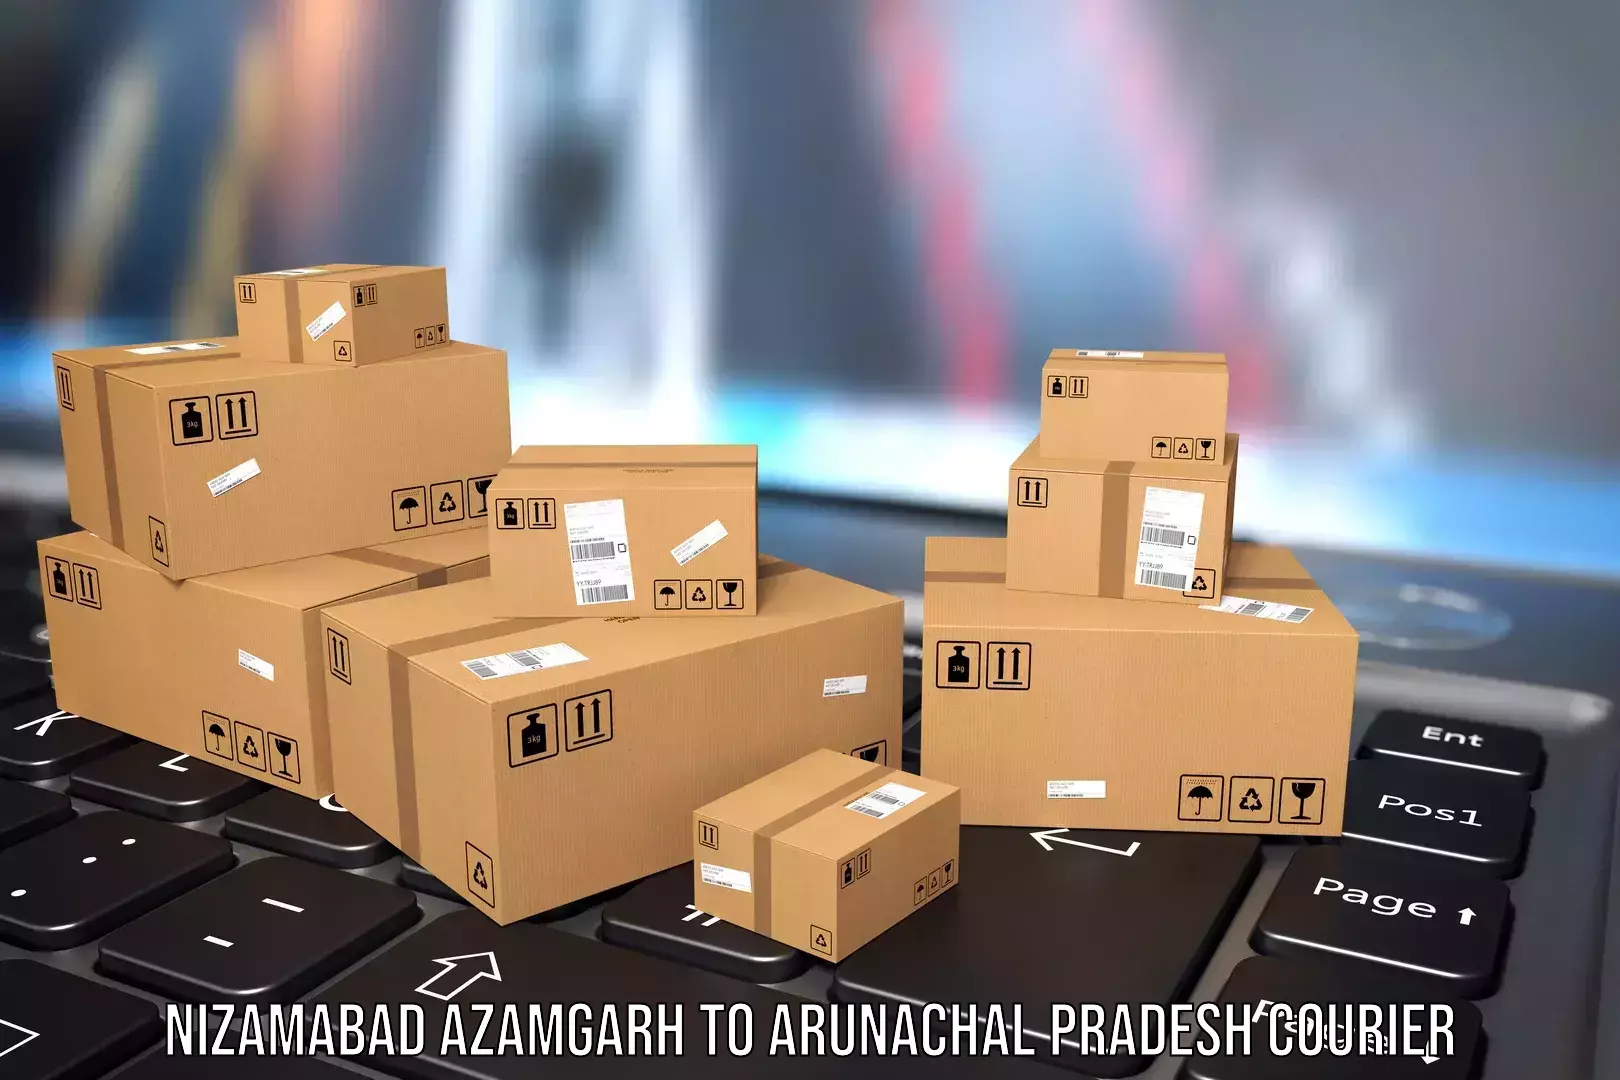 Baggage transport technology Nizamabad Azamgarh to Aalo